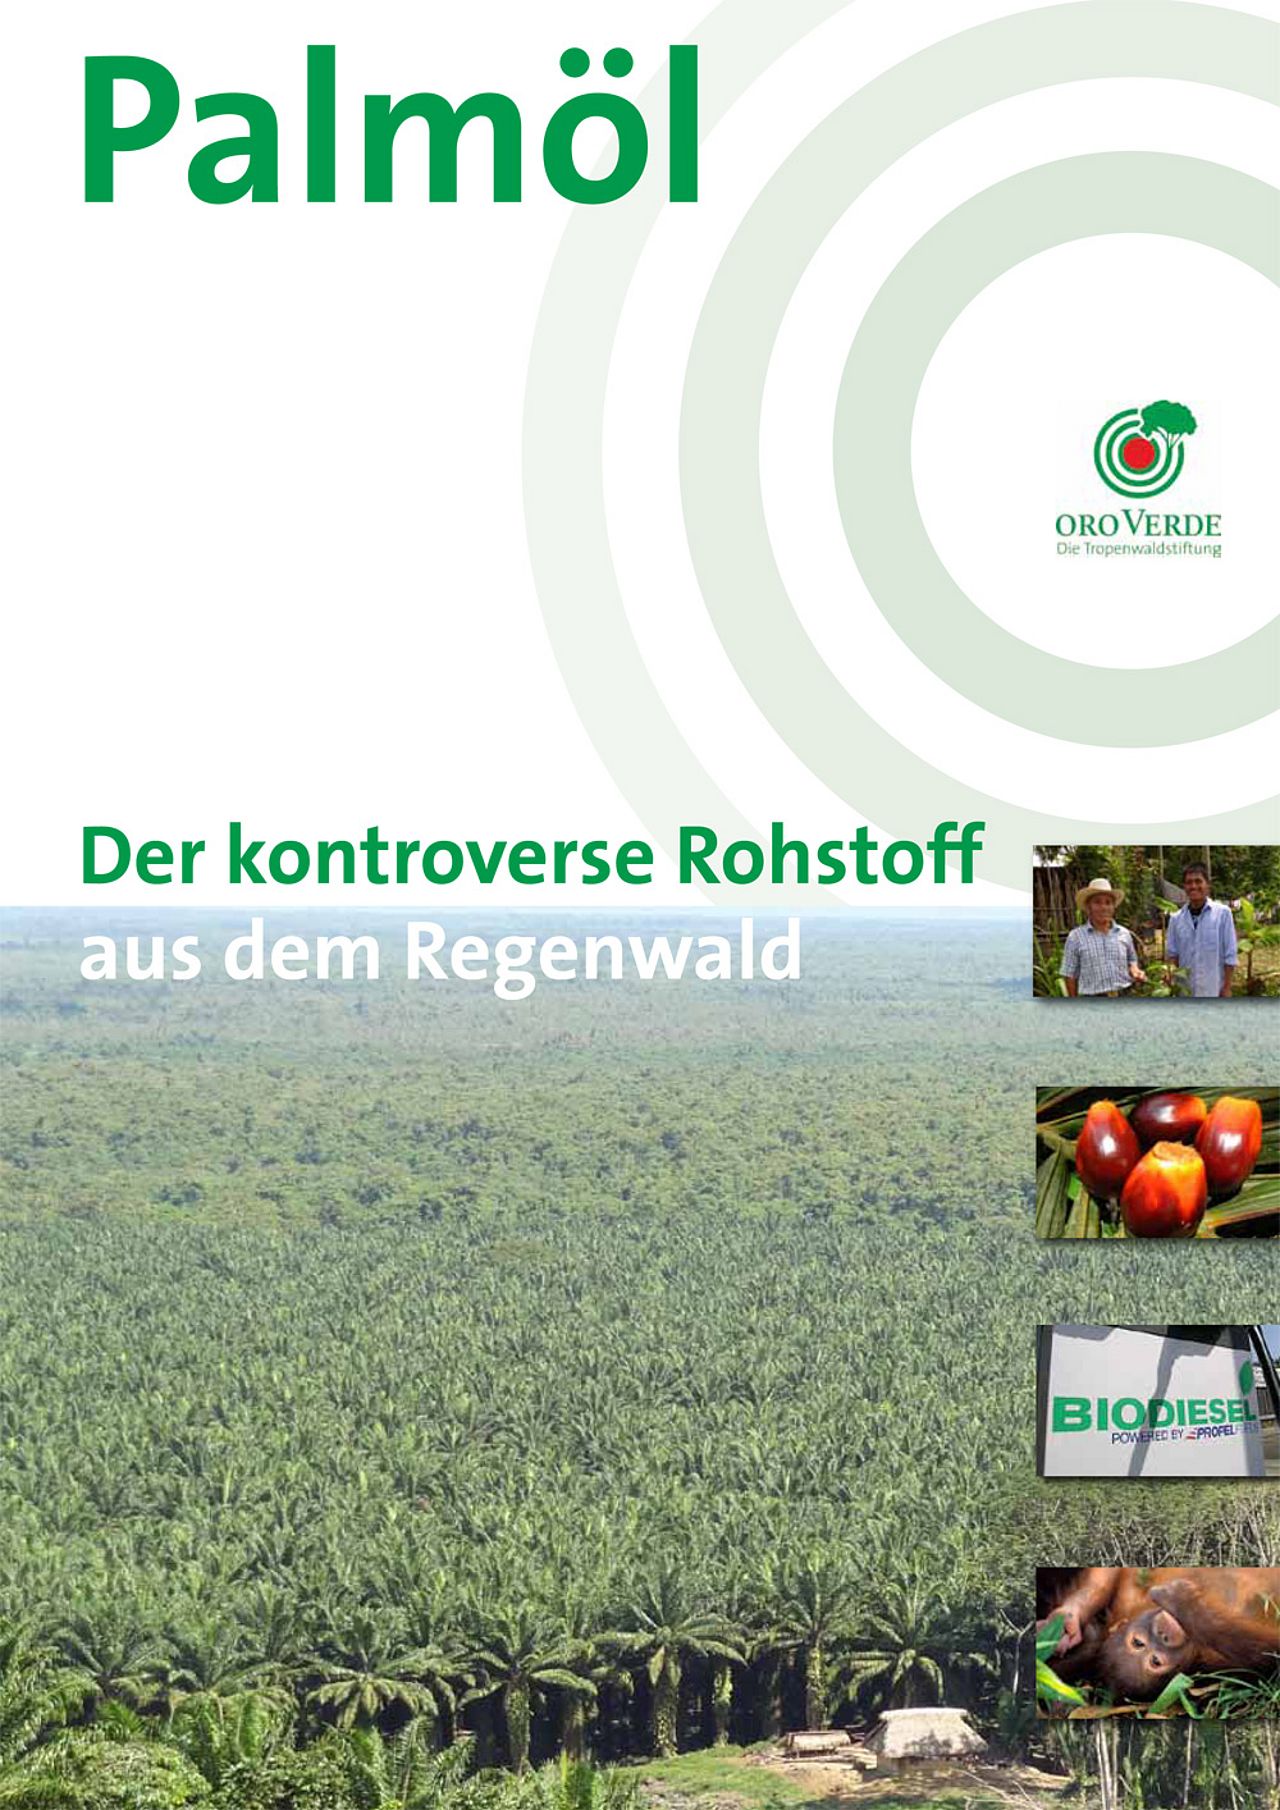 Der kontroverse Rohstoff aus dem Regenwald: Palmöl - Ein Faktenpapier von OroVerde